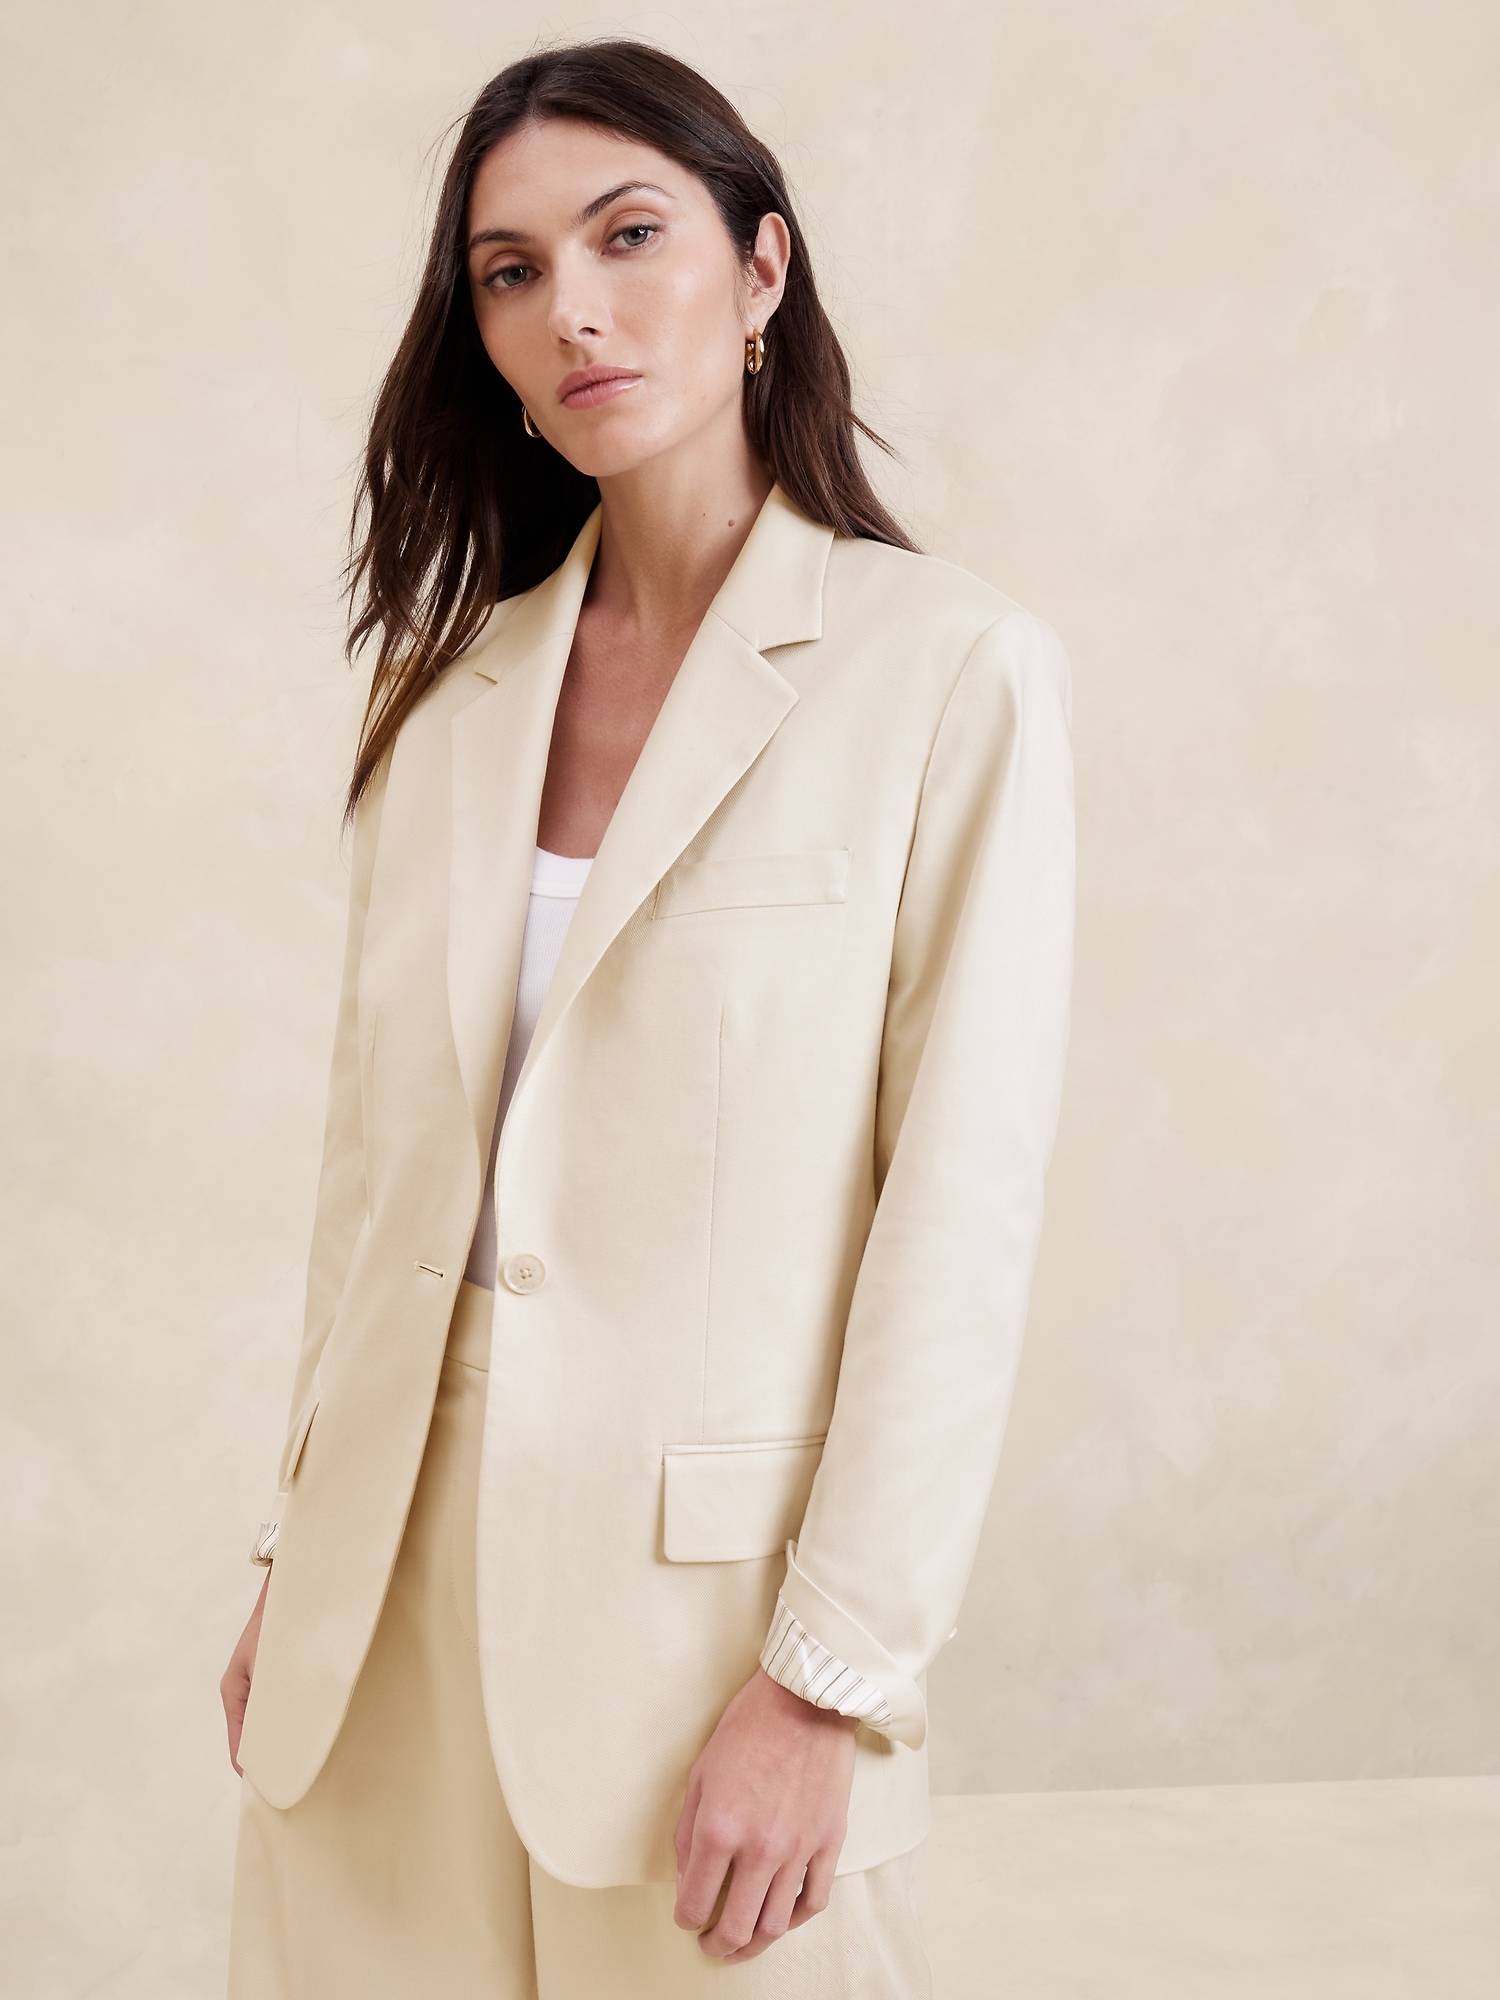 Women Slim Blazer Top Formal OL Work Jacket Ladies Long Sleeve Outwear Suit  Coat